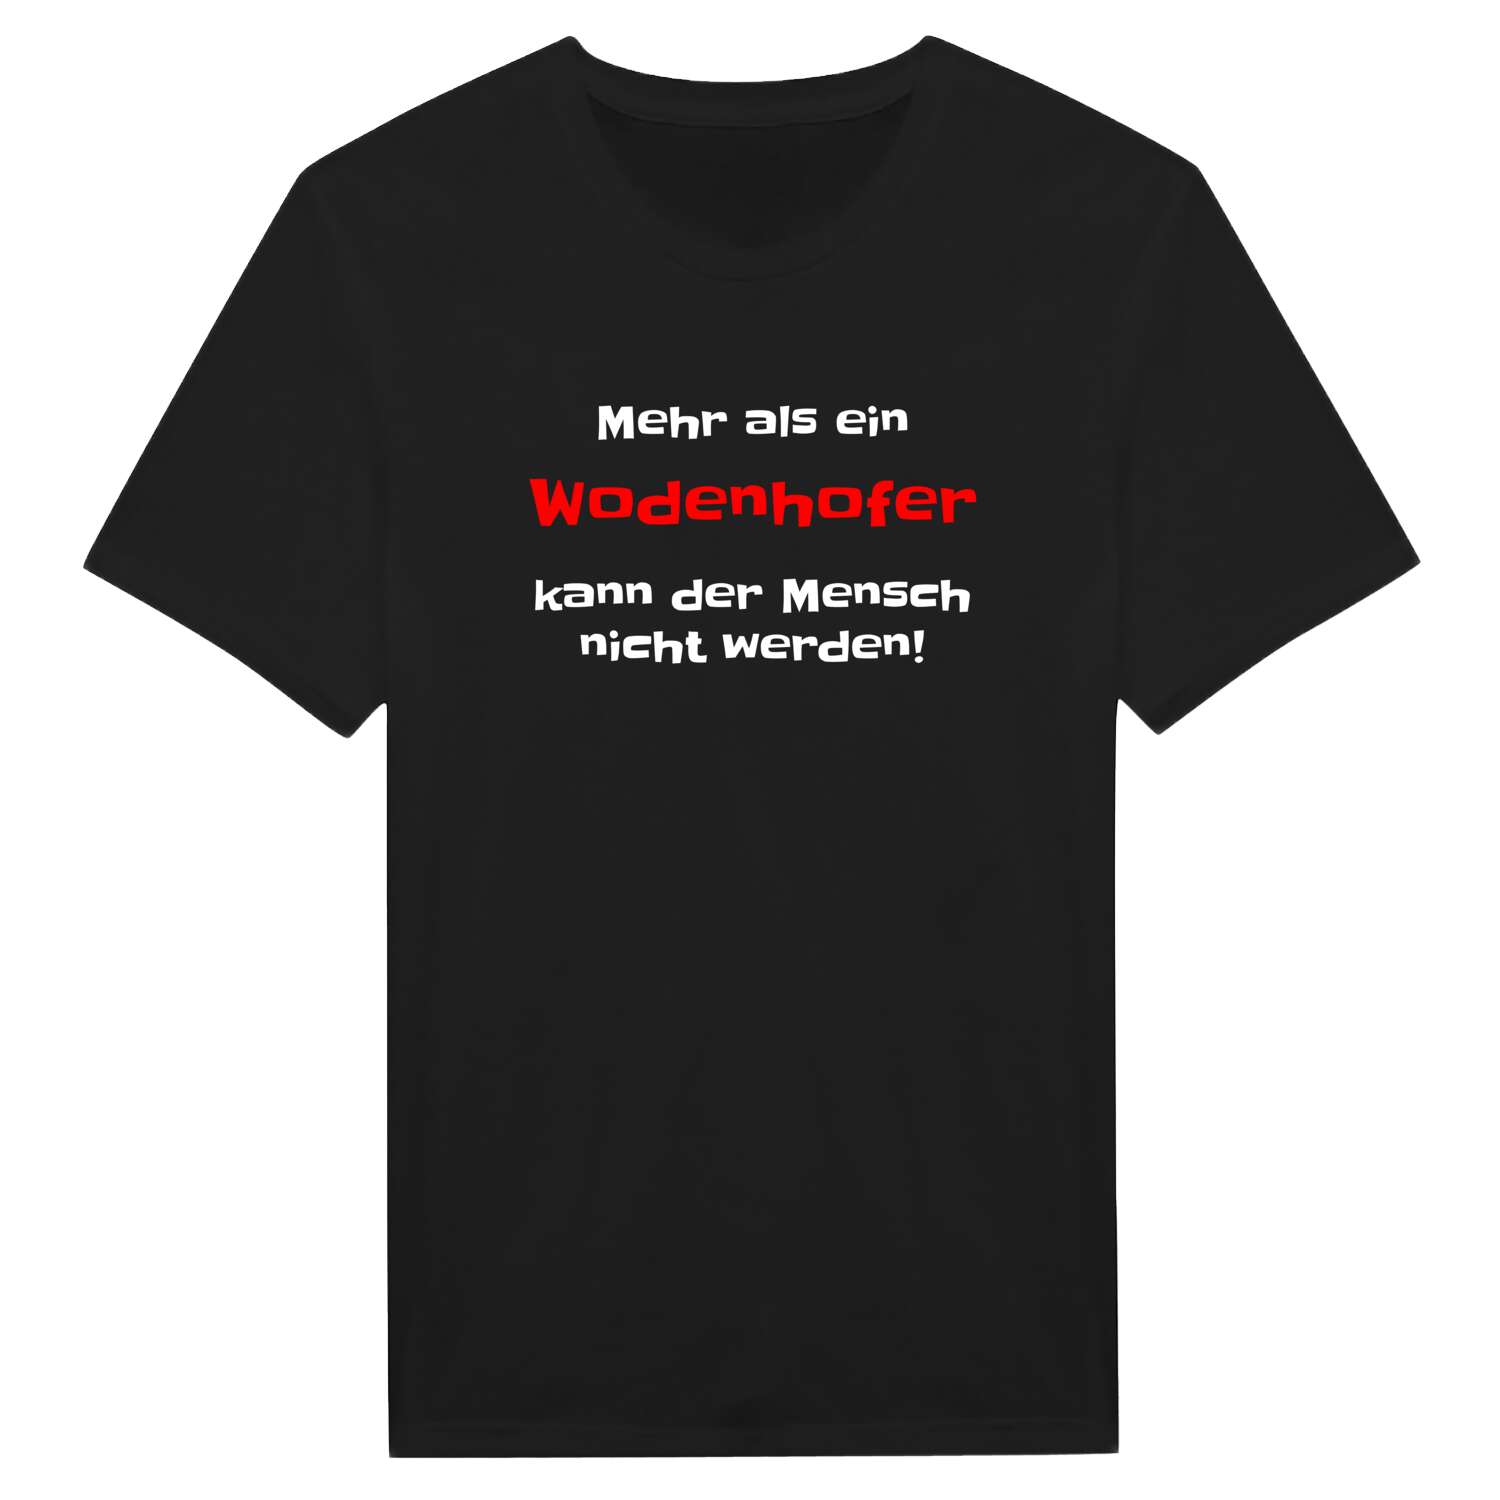 Wodenhof T-Shirt »Mehr als ein«